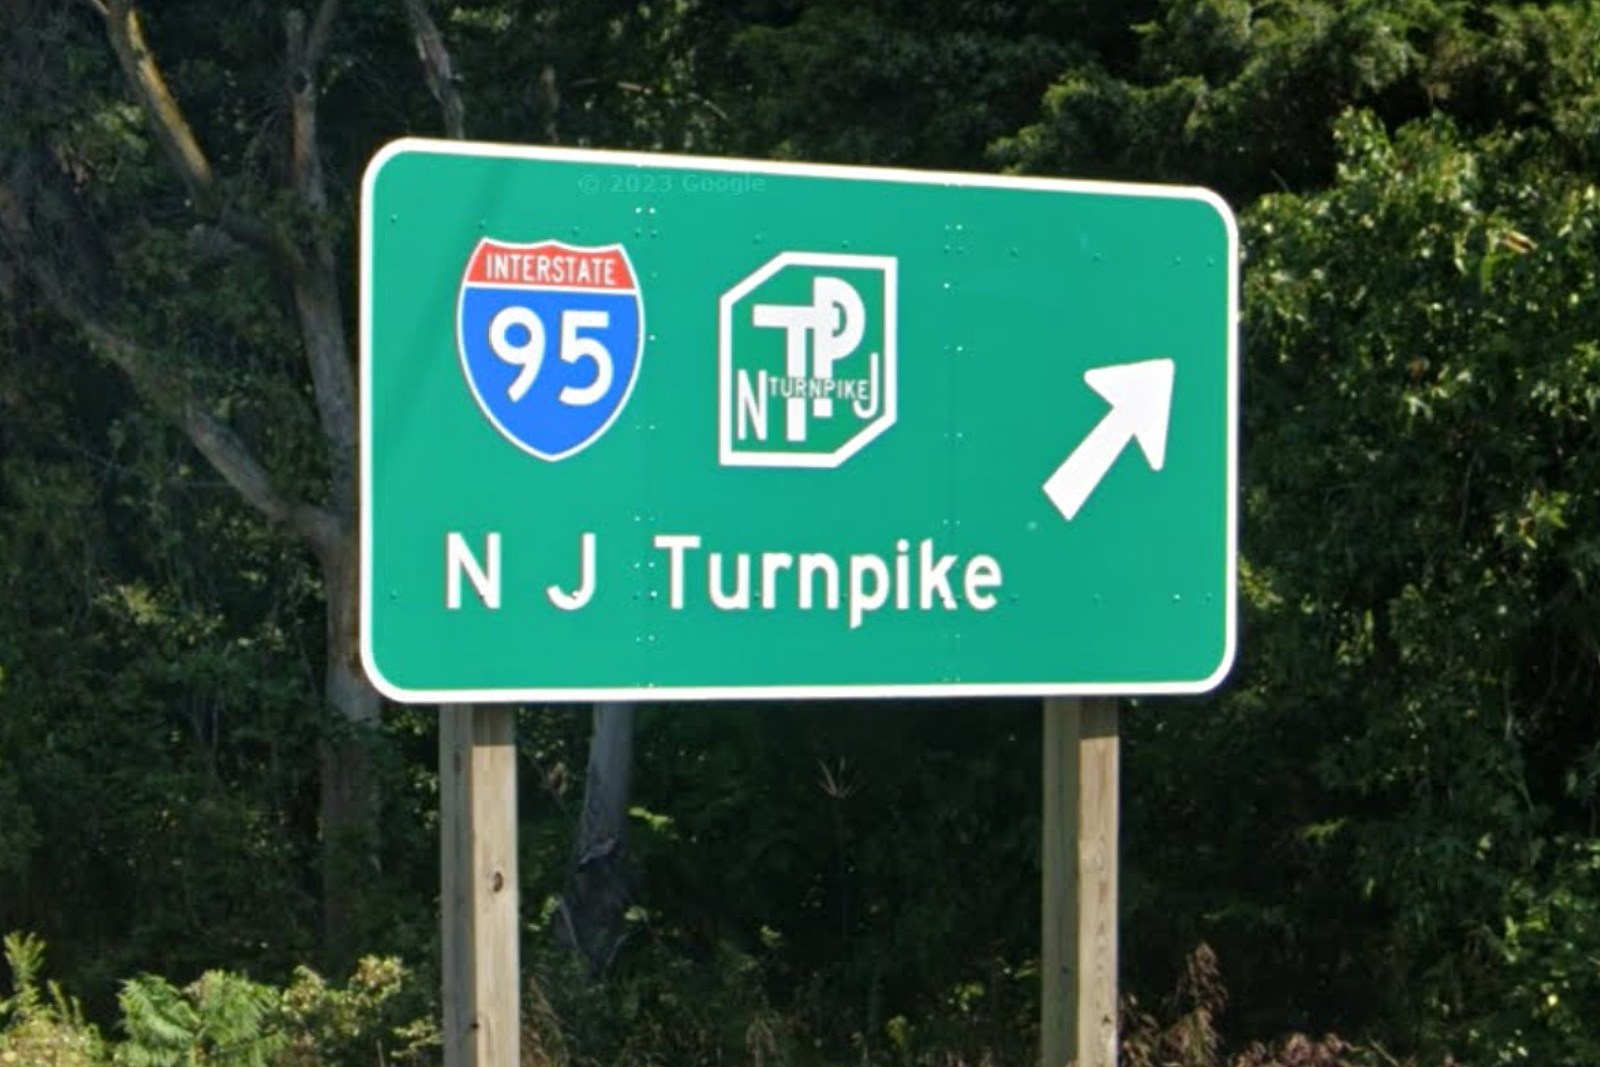 New Jersey Turnpike - Photo: Google Maps